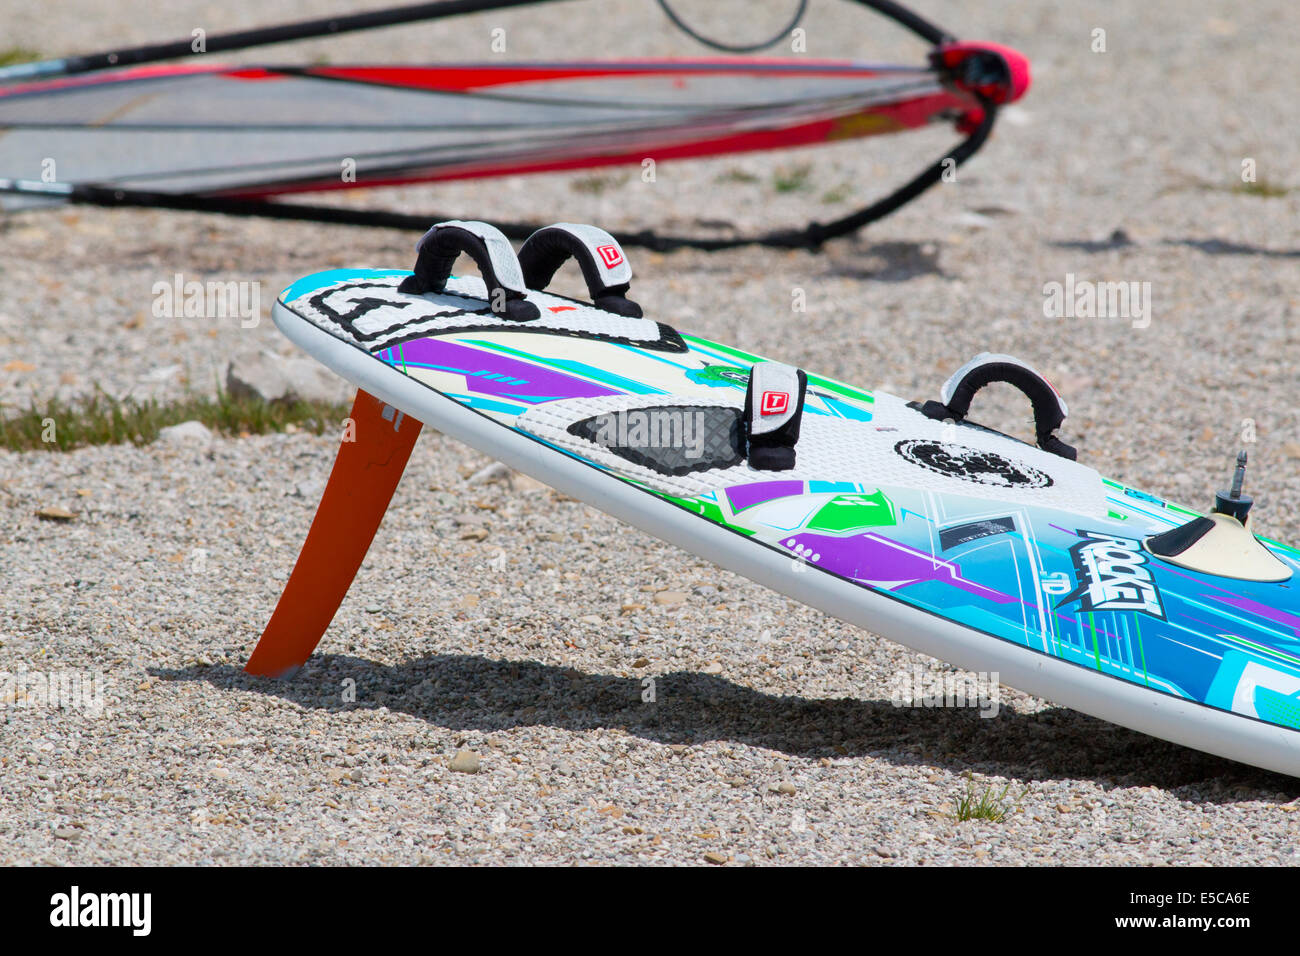 Lac DE SANTA CROCE, ITALIE - 13 juillet 2014 : Un kitesurfboard dans la plage LAC DE SANTA CROCE Banque D'Images